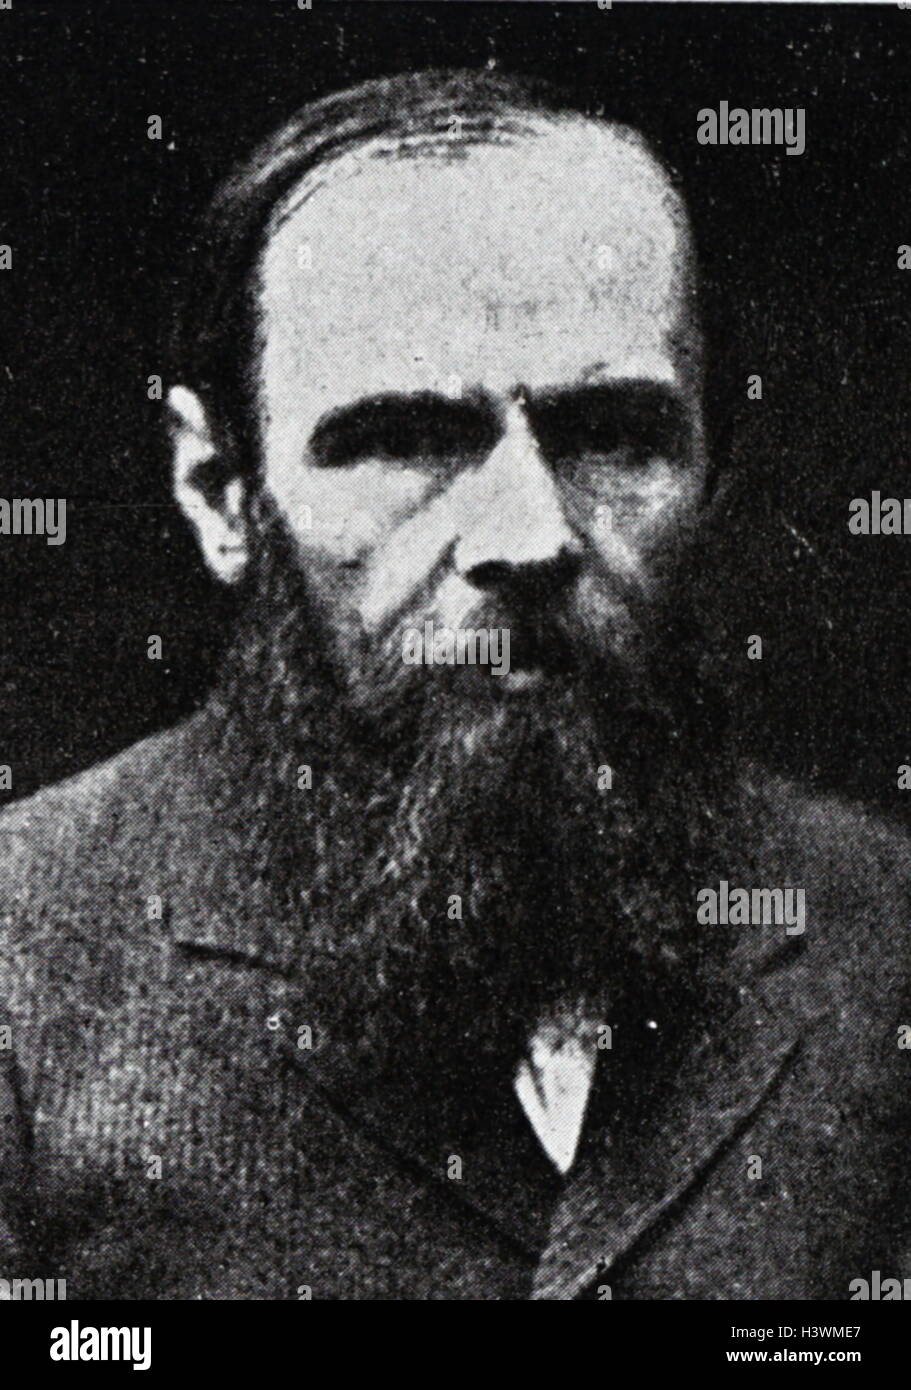 Ritratto di Fëdor Dostoevskij (1821-1881) un romanziere russo breve storia scrittore, saggista, giornalista e filosofo. Datata del XIX secolo Foto Stock